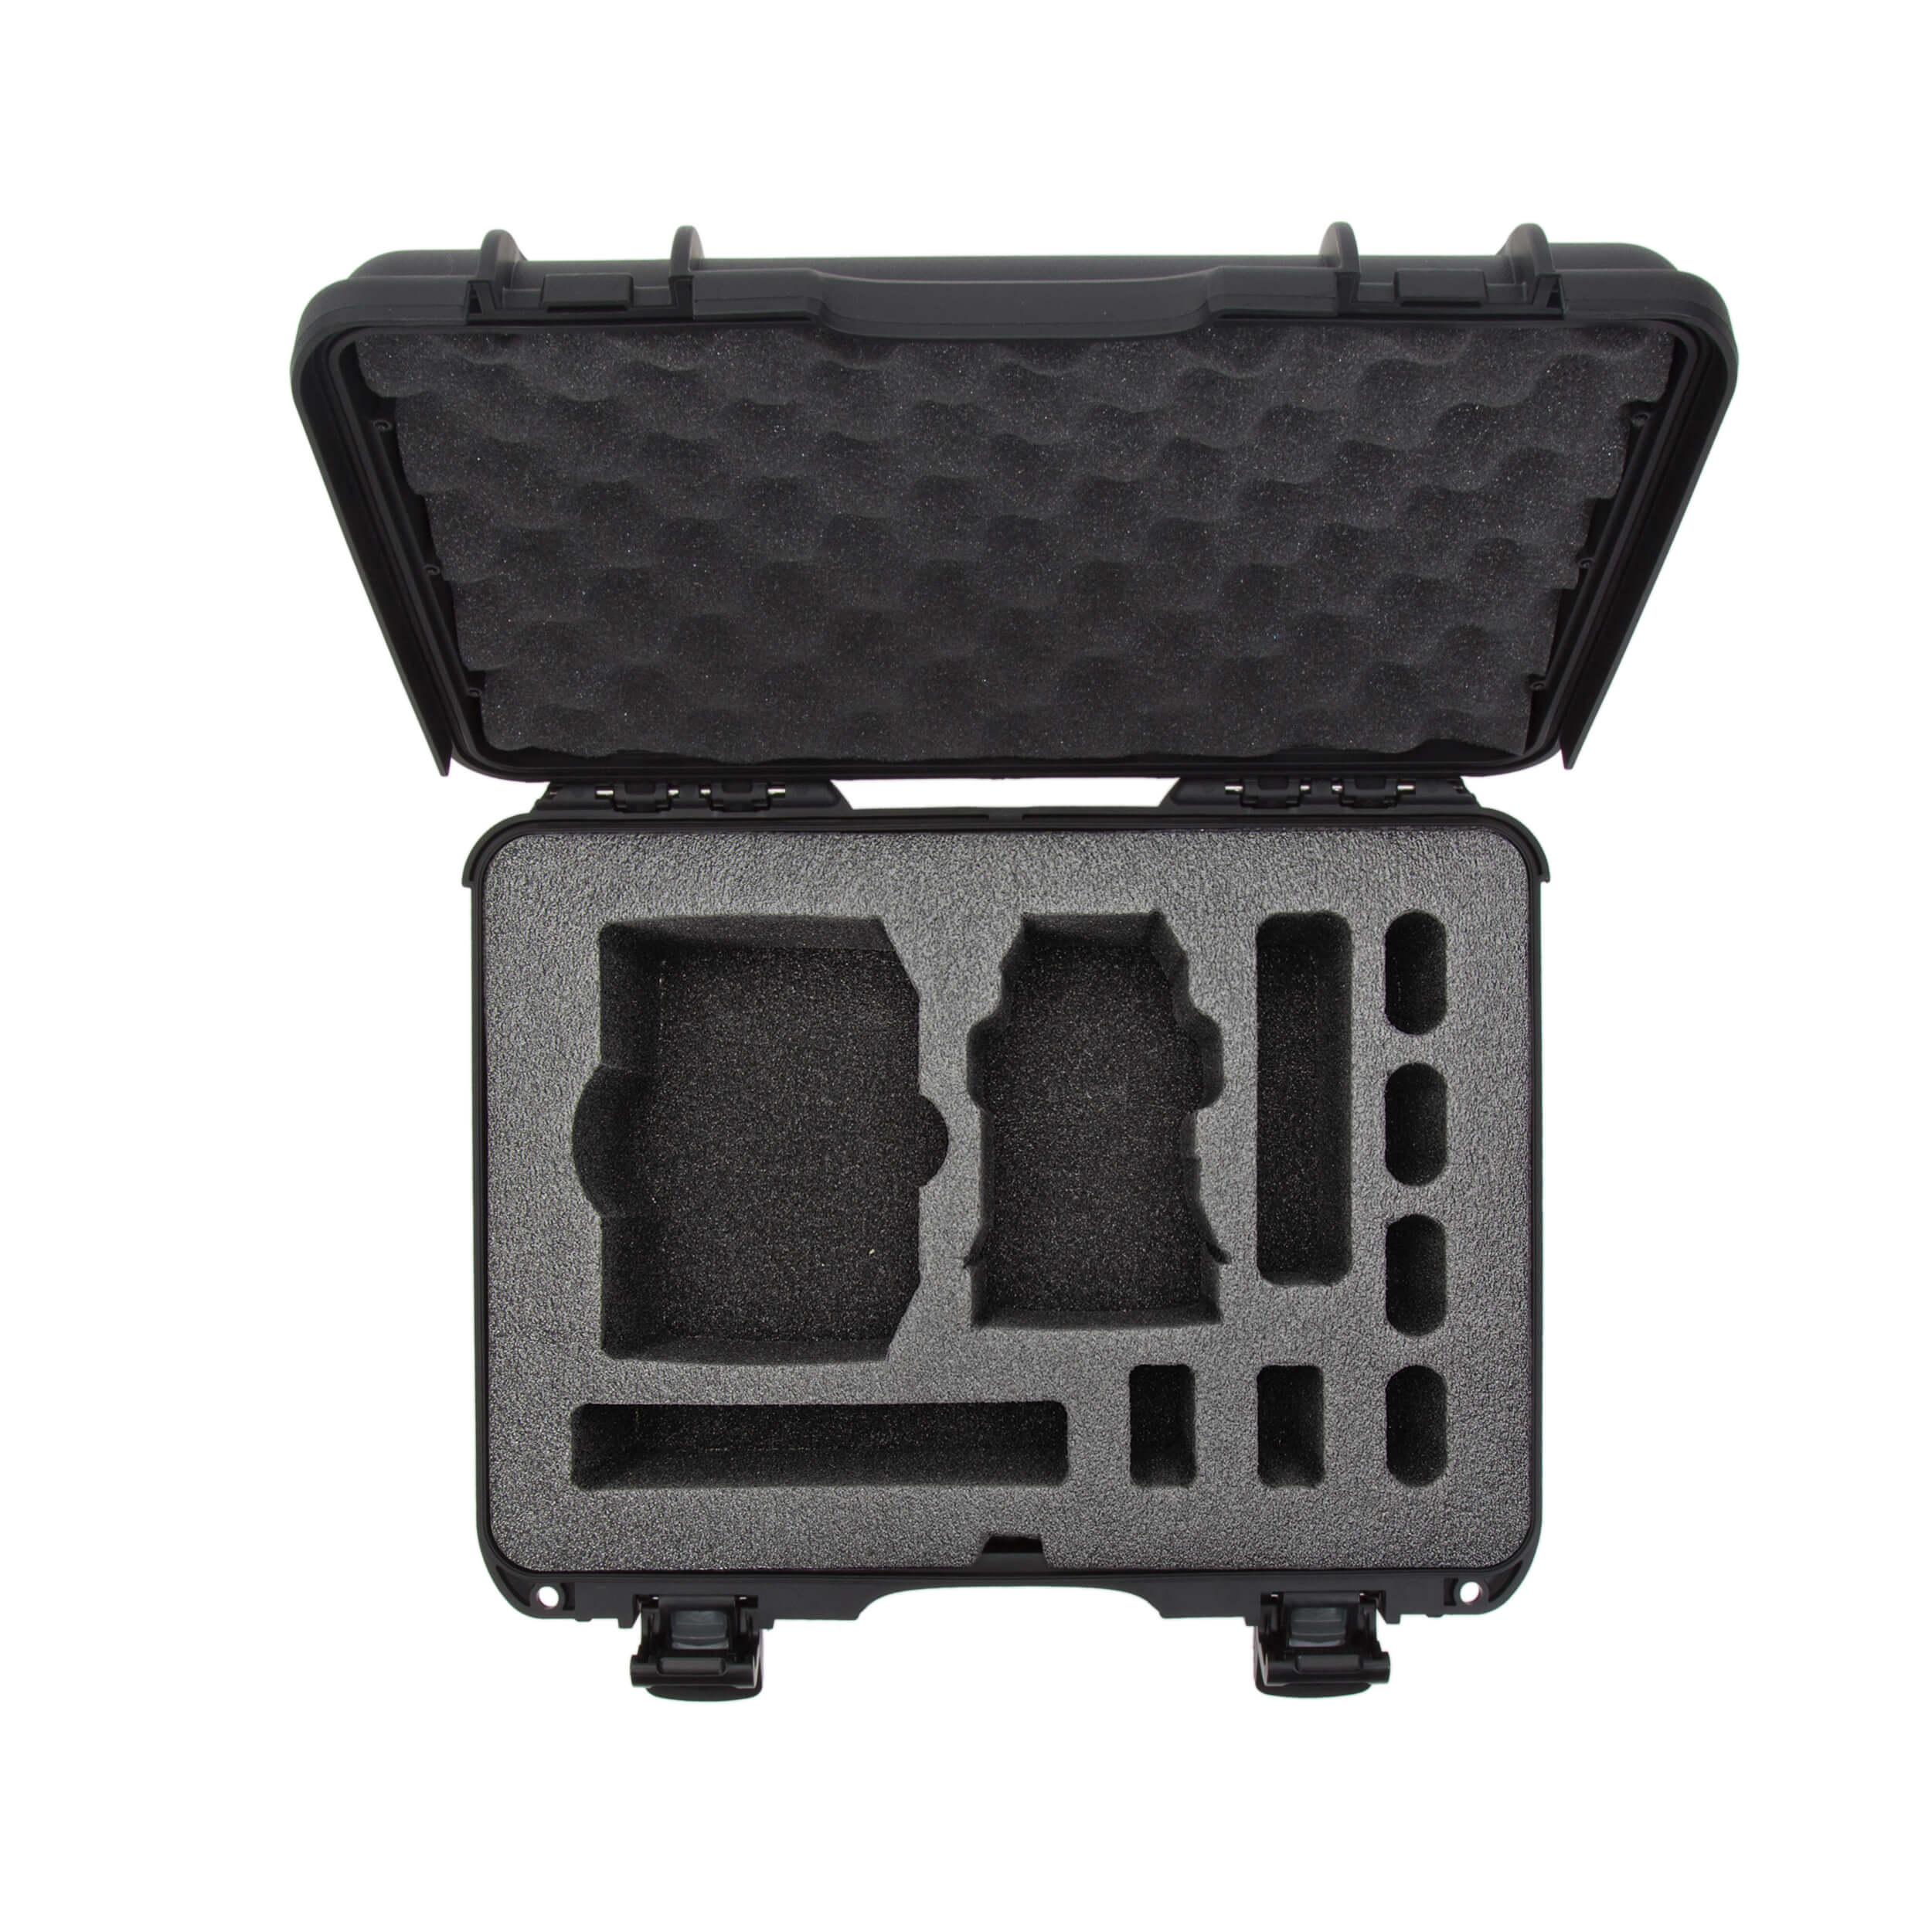 Buy DJI Pocket 2 Waterproof Case - DJI Store